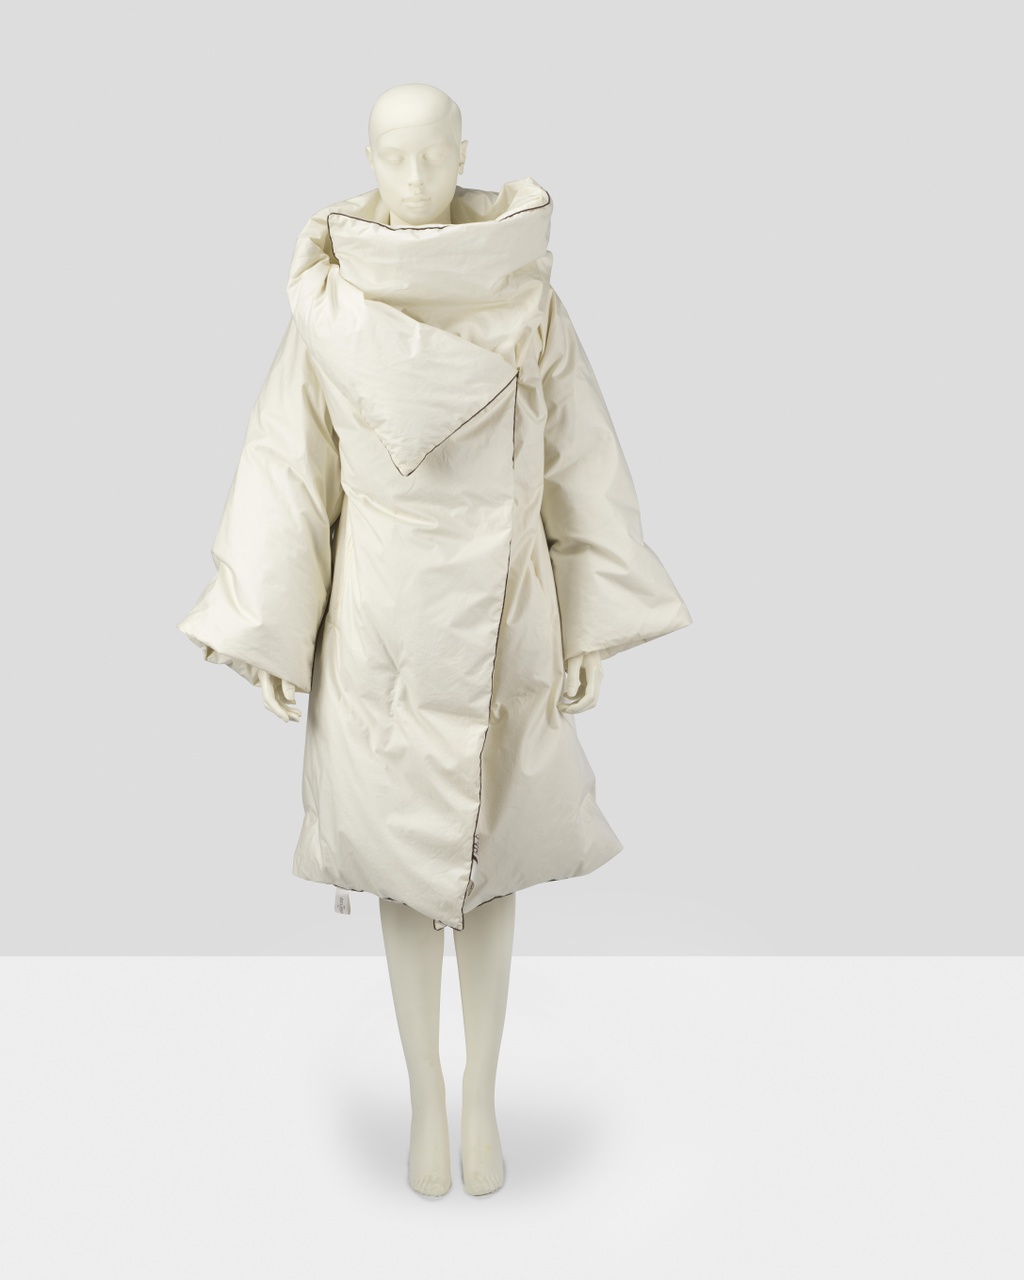 Ensemble 'Dekbedjas' bestaande uit jas, laken, hoes en ceintuurs